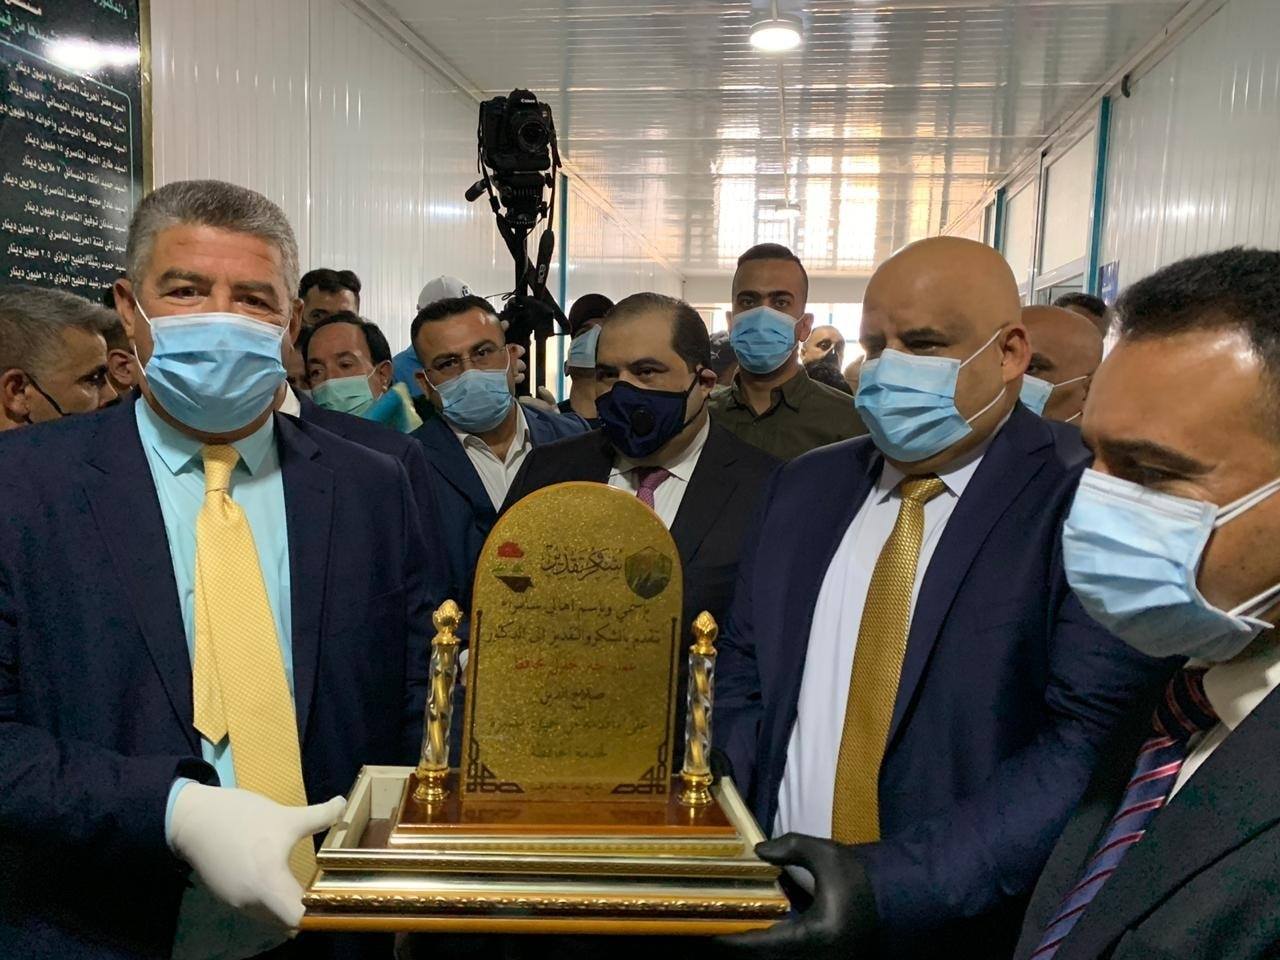 وزير الصحة يفتتح مستشفى ”كرفاني“ لمصابي كورونا في صلاح الدين